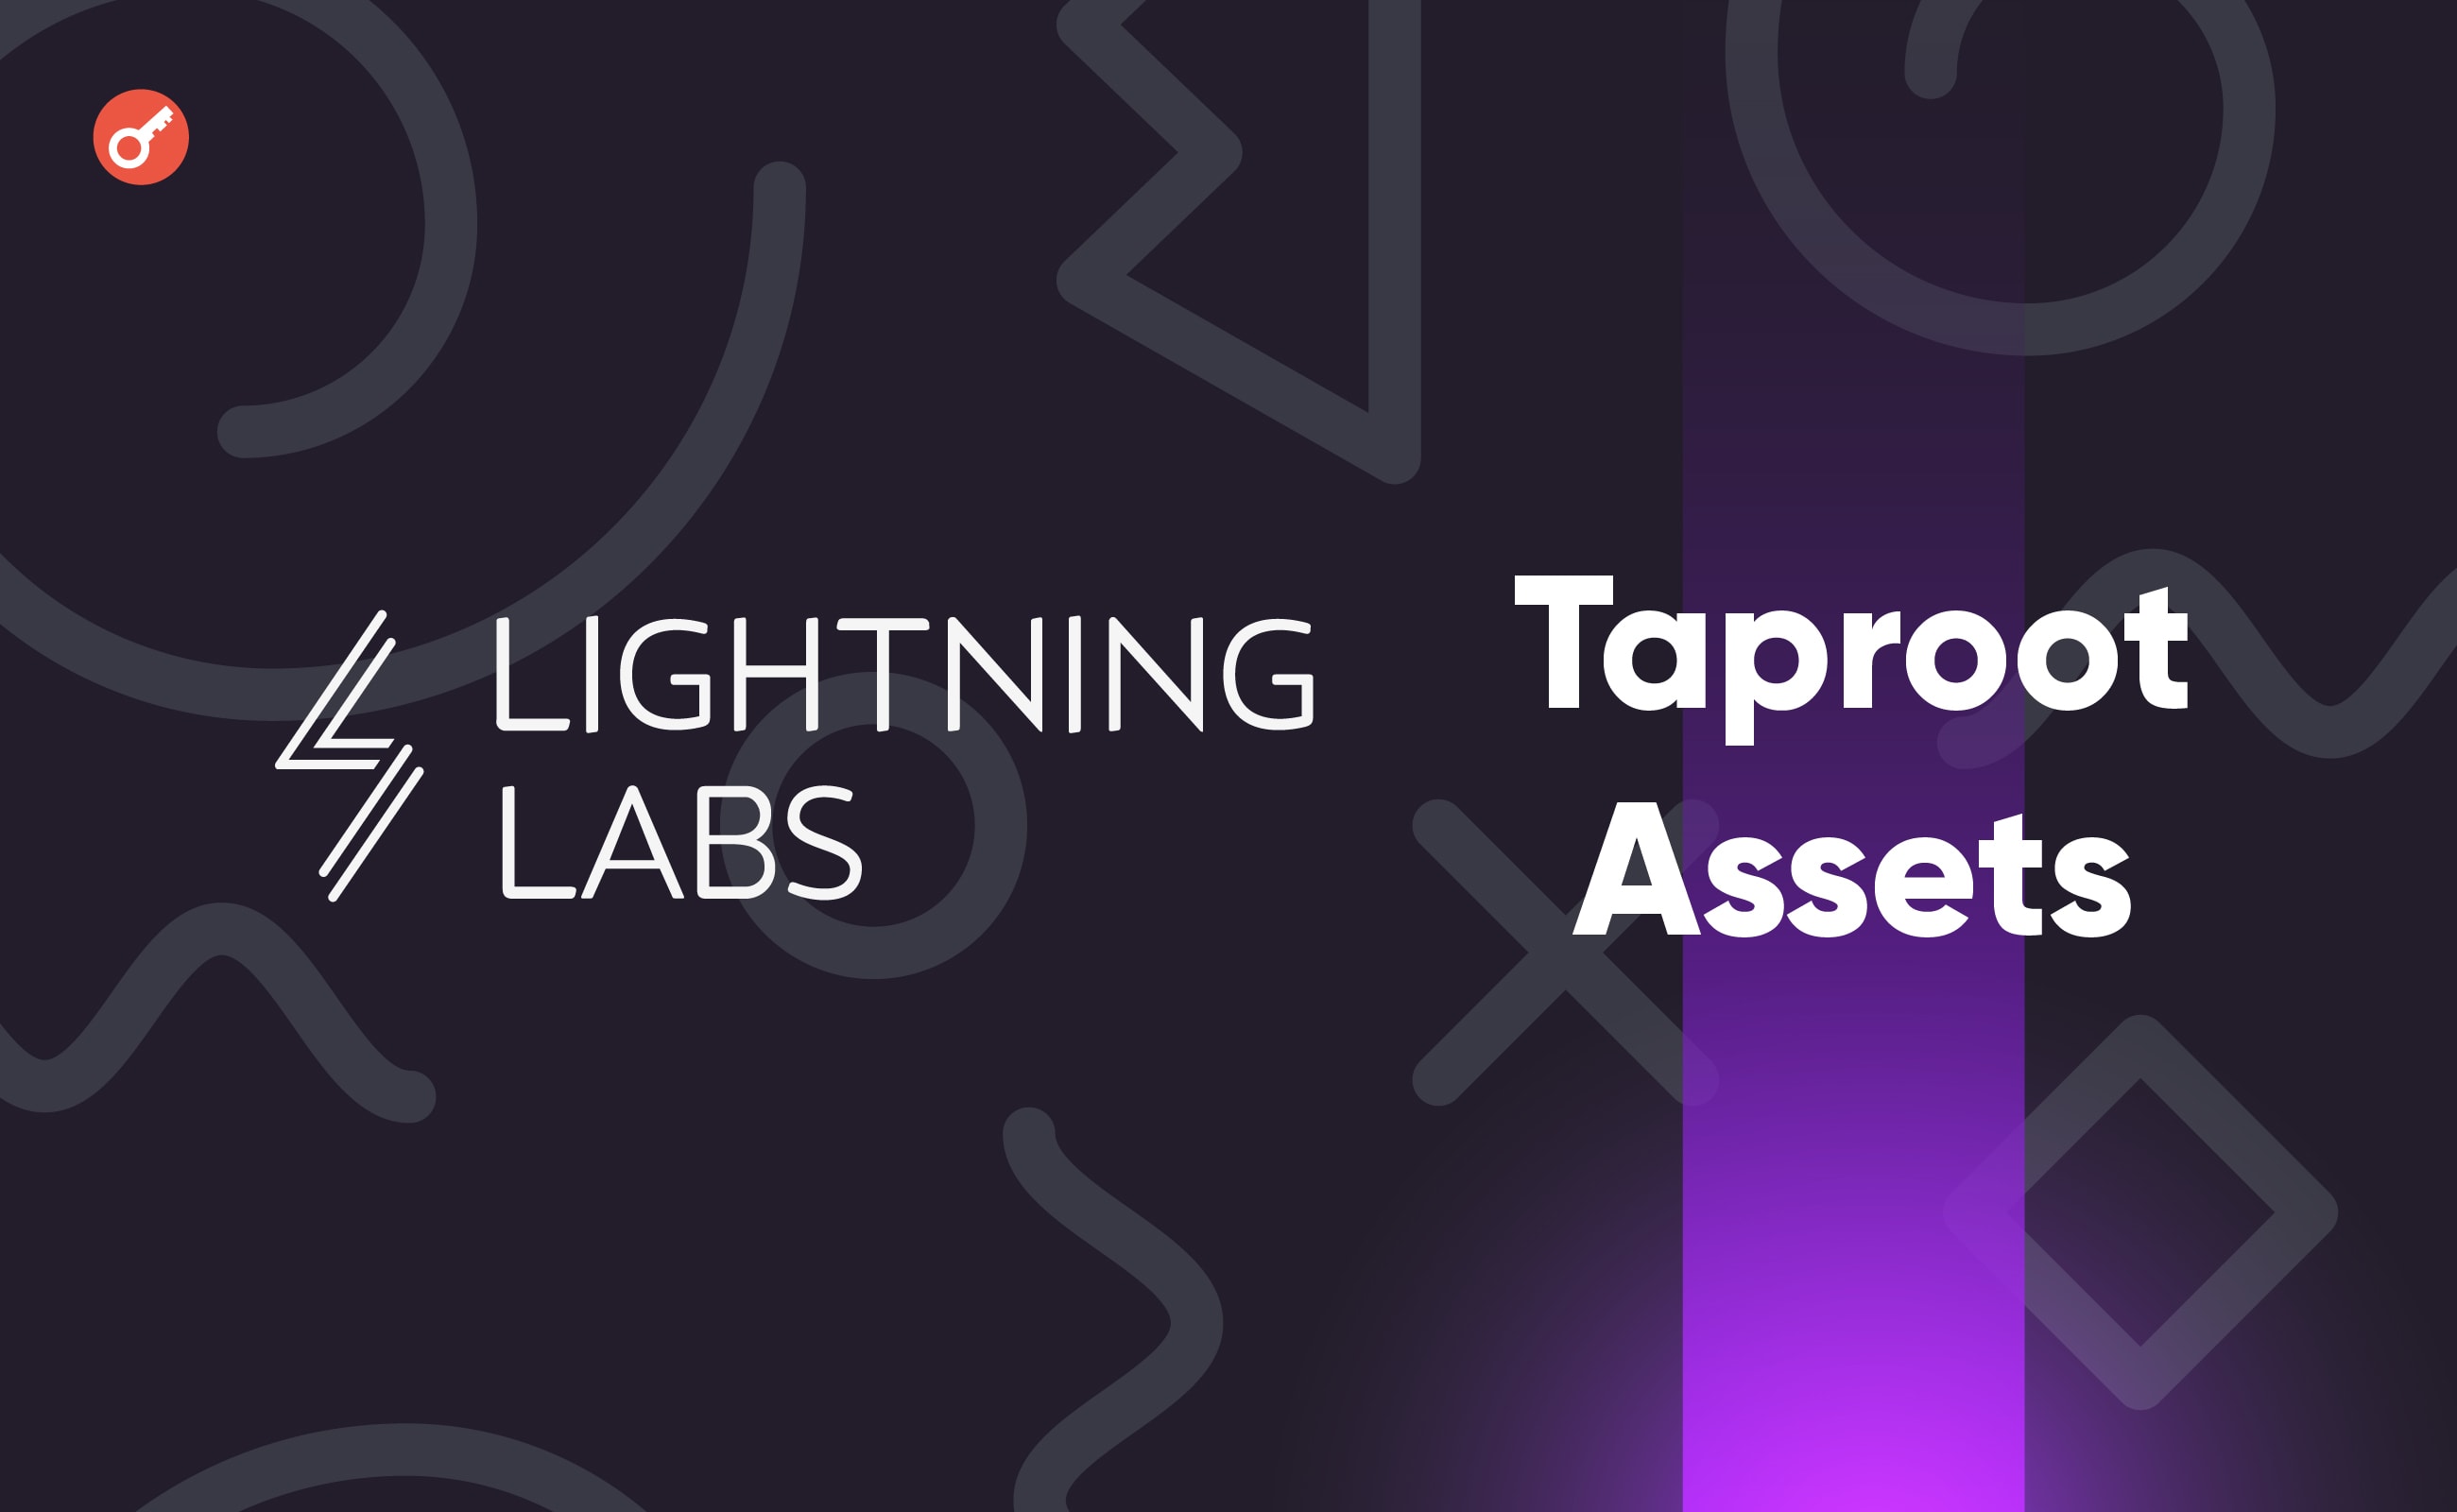 Lightning Labs uruchomiło wersję alfa protokołu Taproot Assets. Główny kolaż wiadomości.